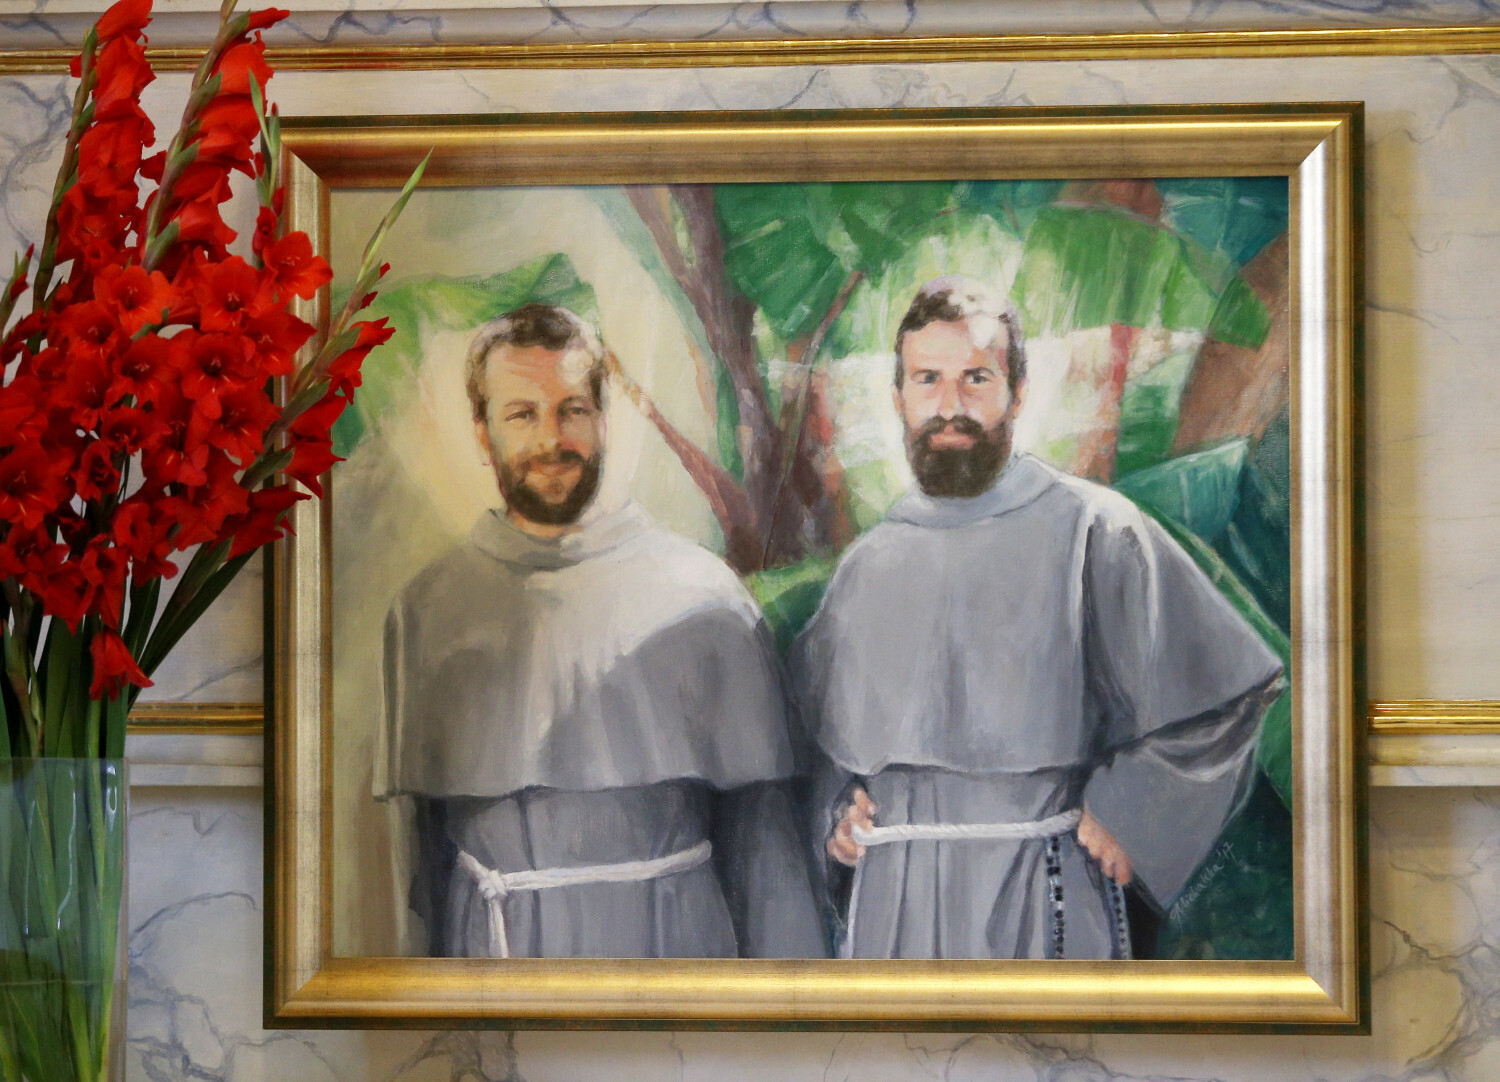 Bł. o. Zbigniew Strzałkowski i bł. o. Michał Tomaszek, franciszkanie, polscy misjonarze męczennicy z Peru